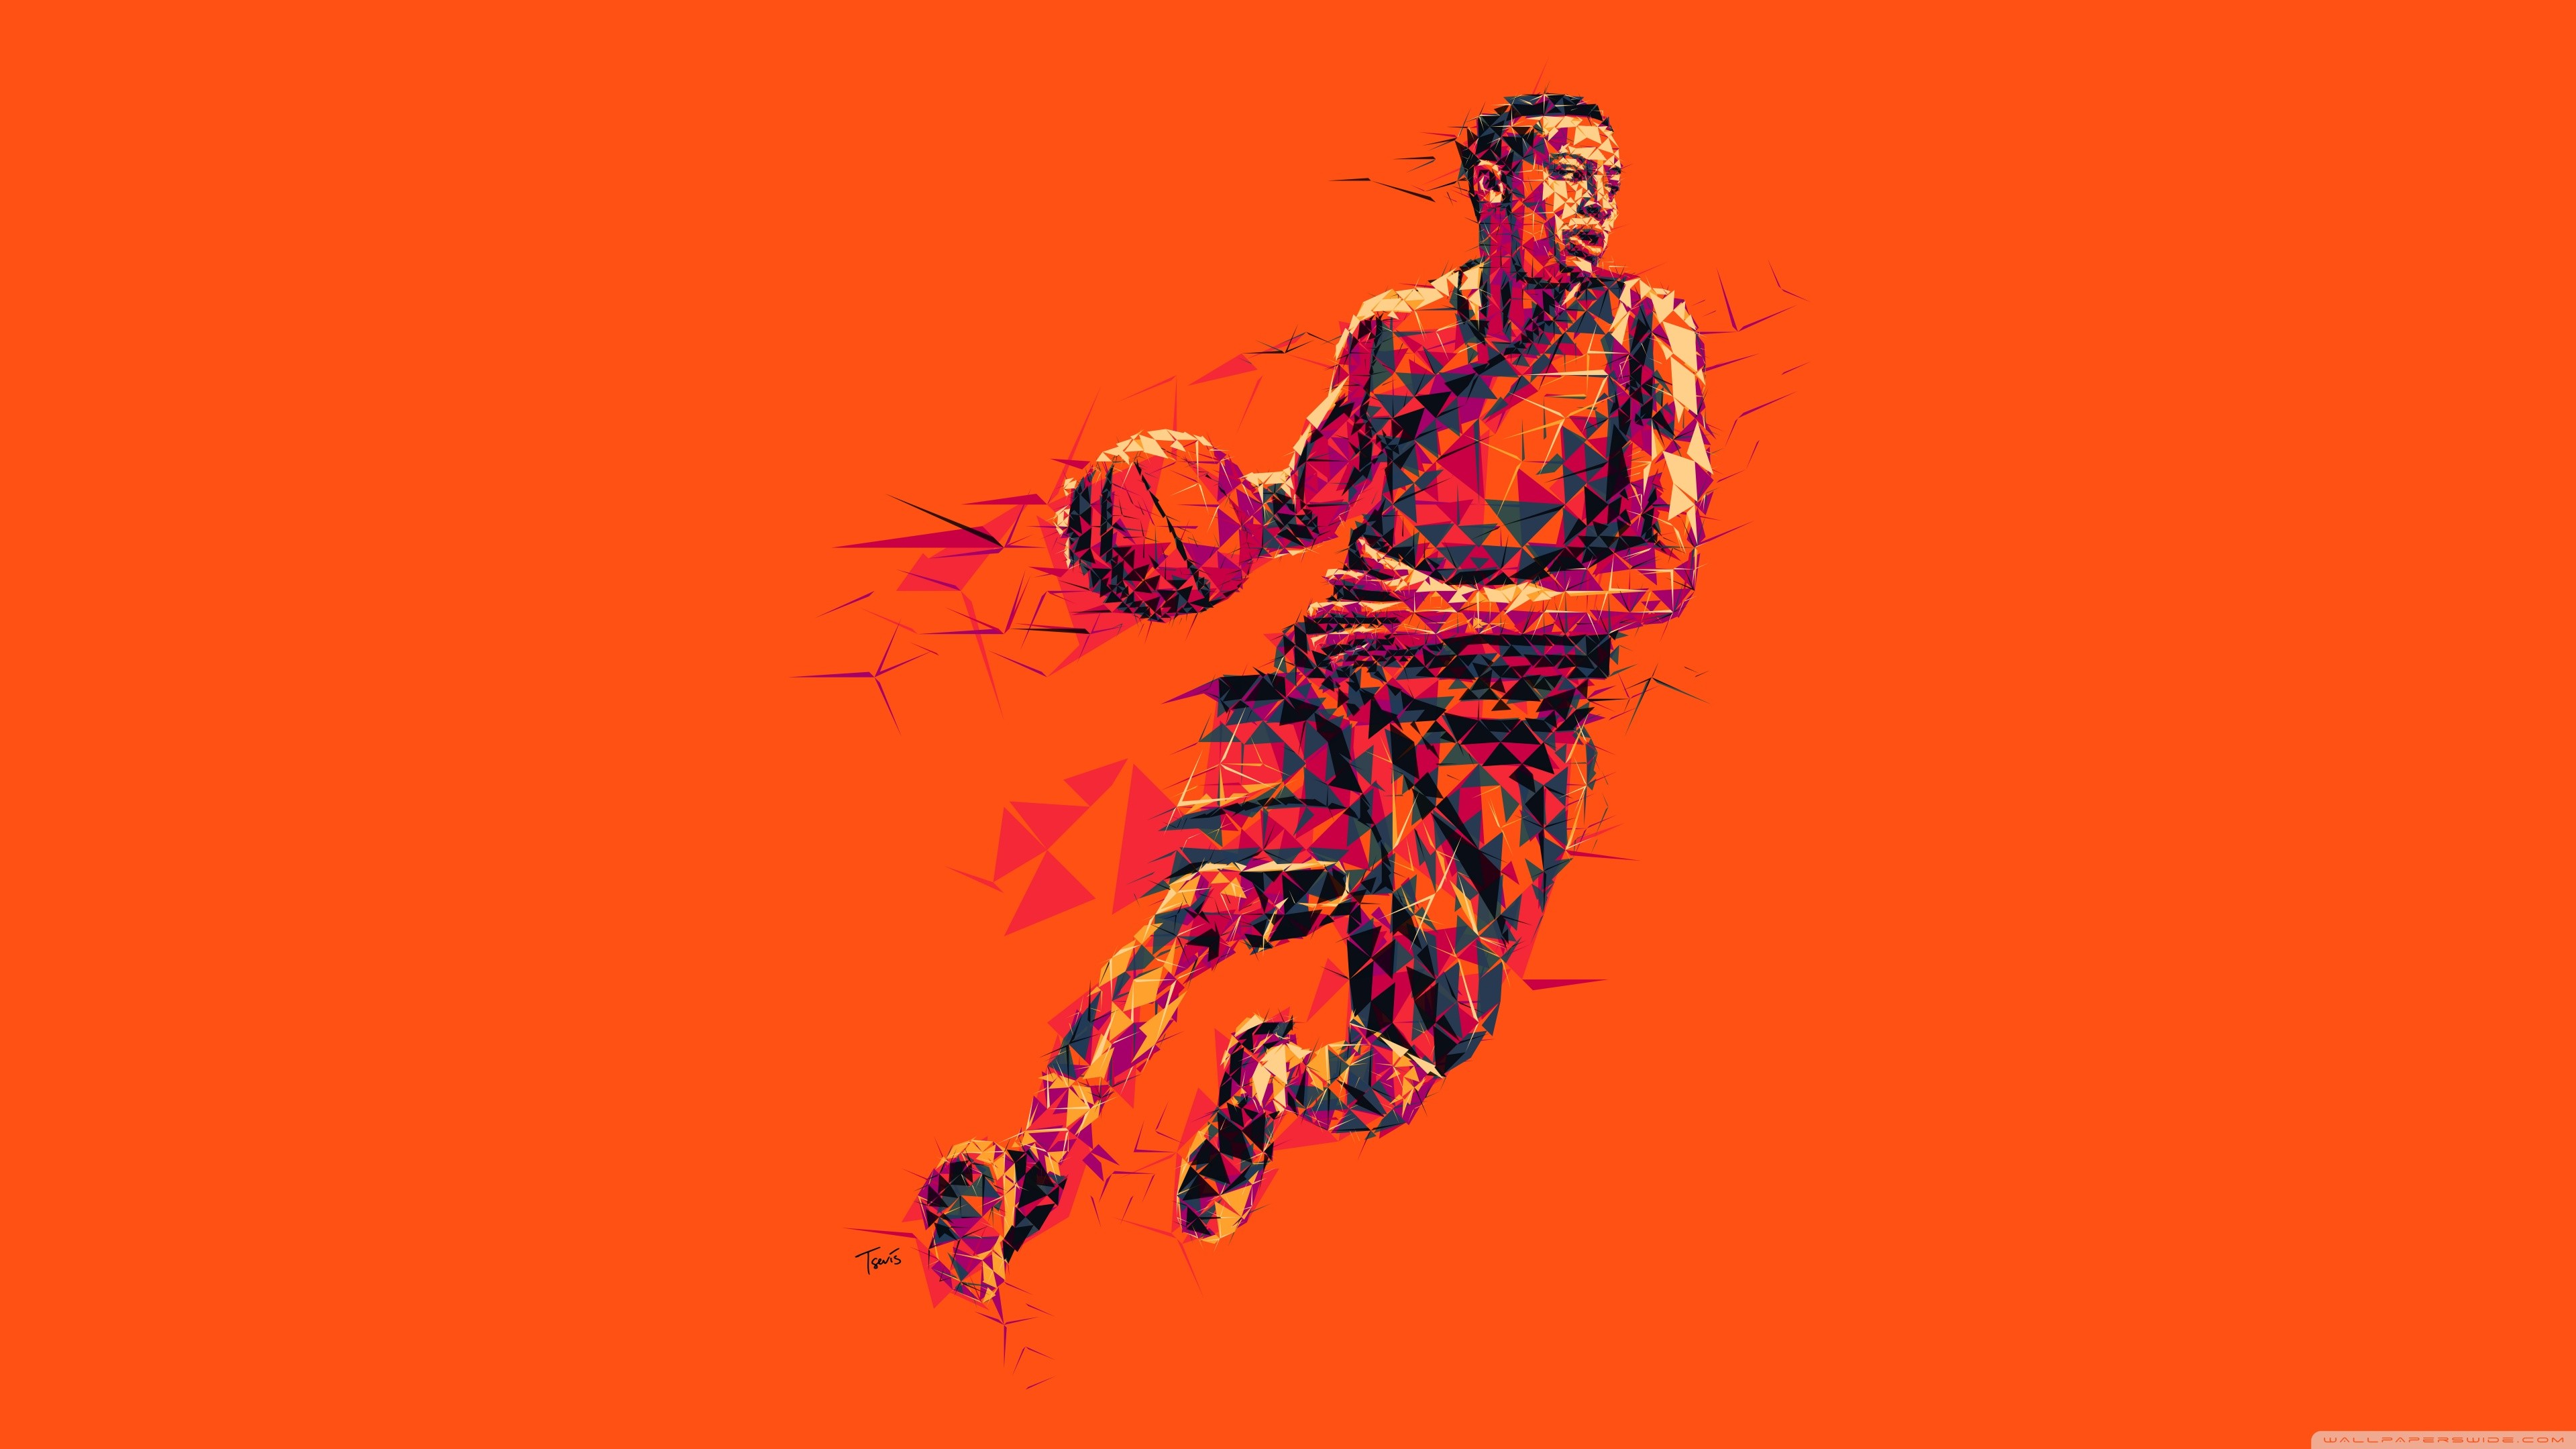 3840x2160 ... basketball hd desktop wallpaper widescreen high definition ...